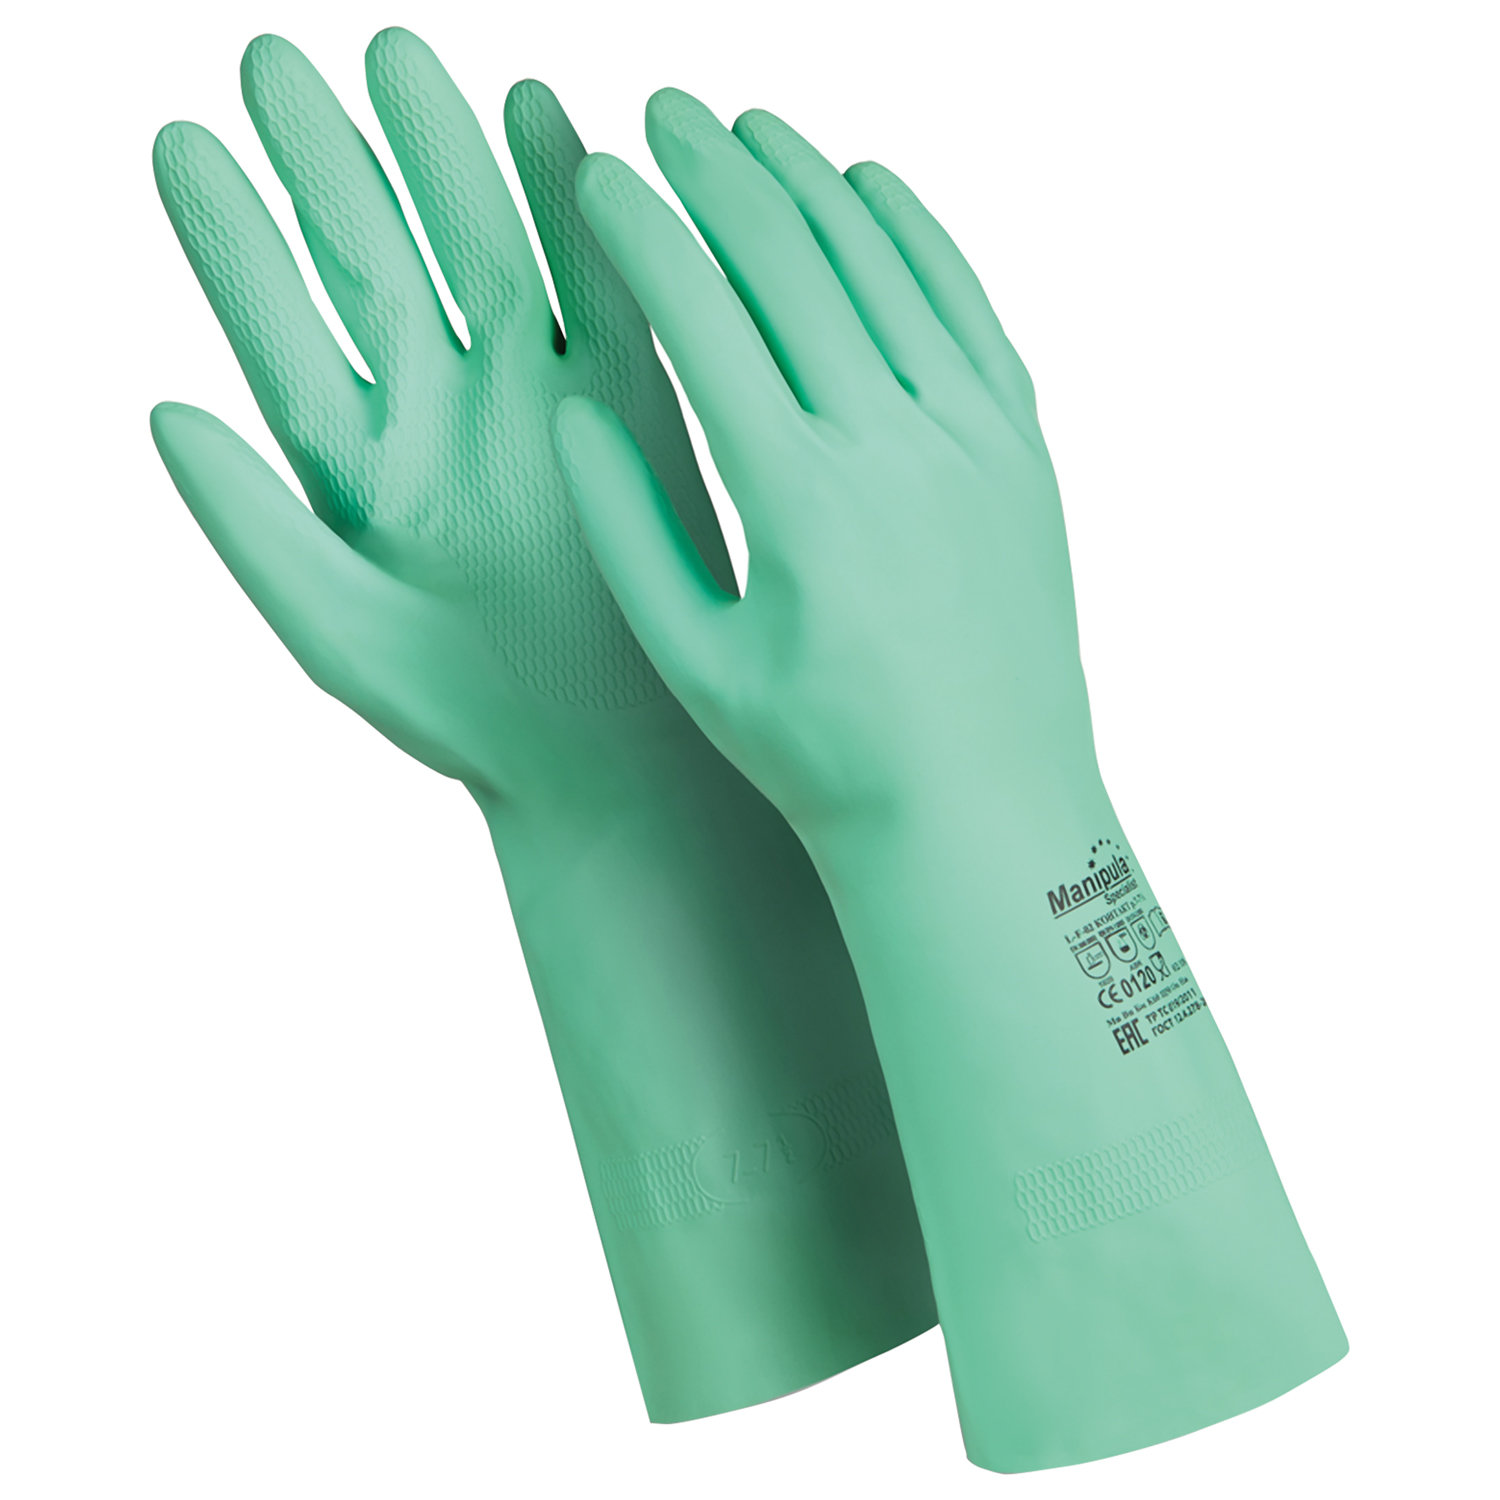 Перчатки латексные с хб напылением Manipula, размер XL, 6 пар хозяйственные латексные перчатки ecolat